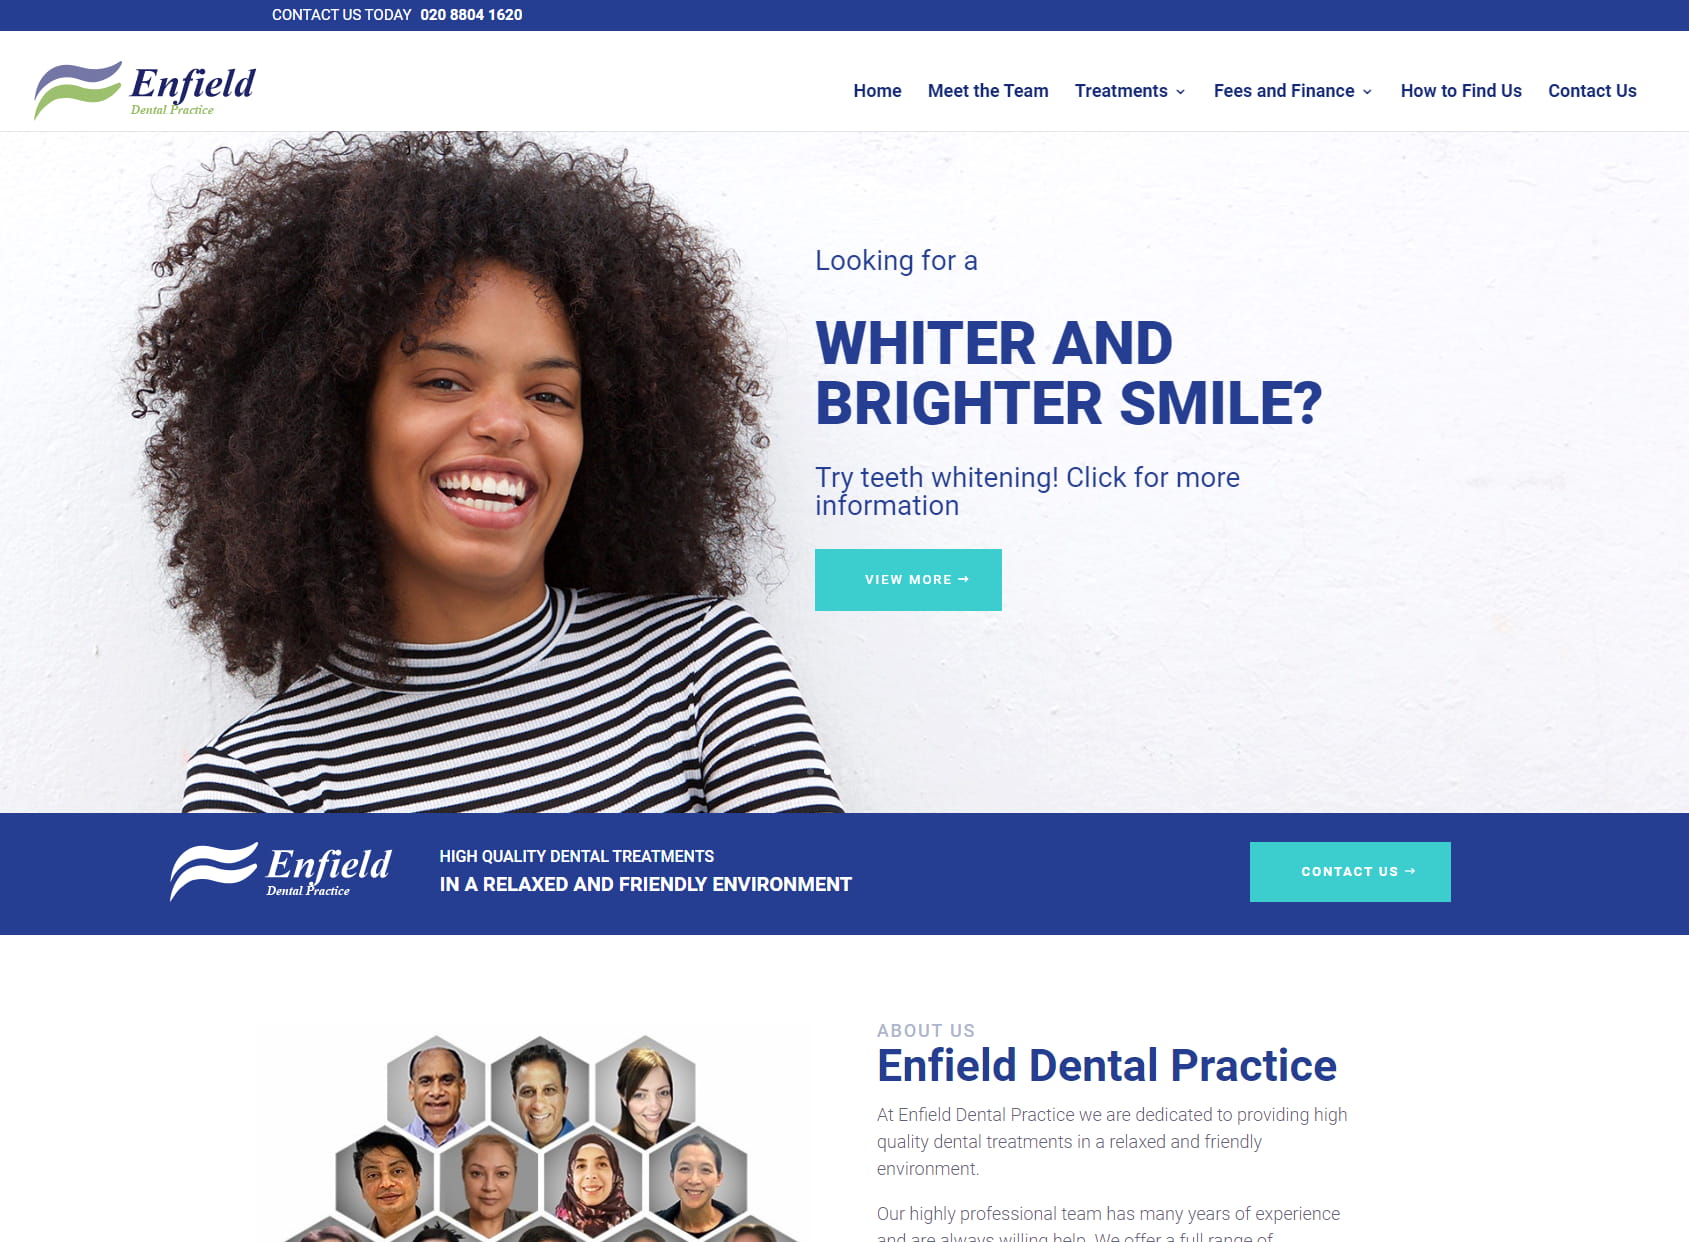 Enfield Dental Practice